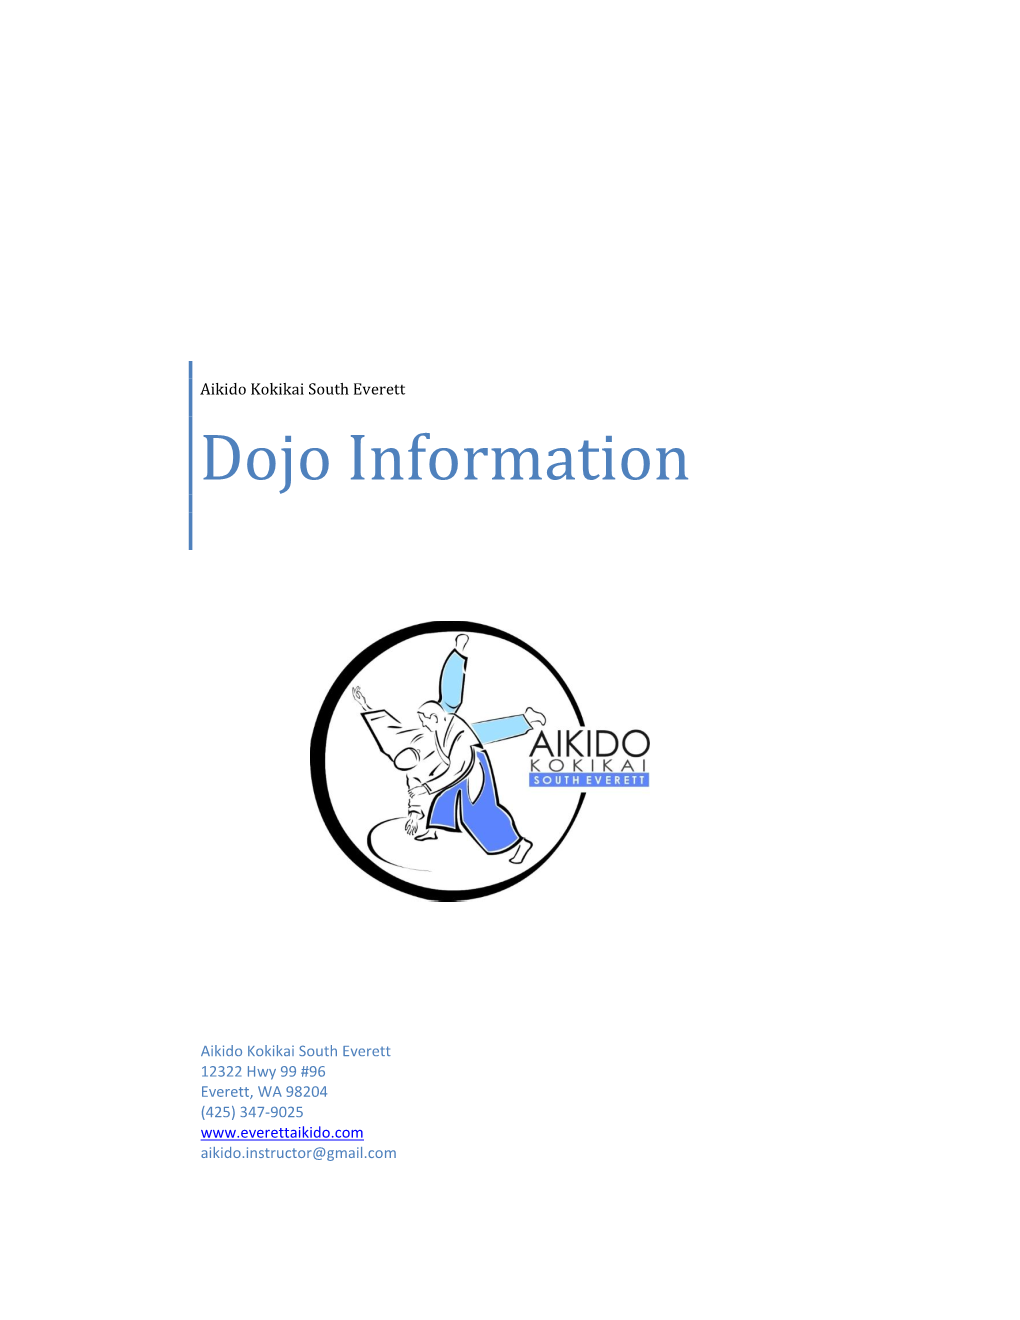 Dojo Information